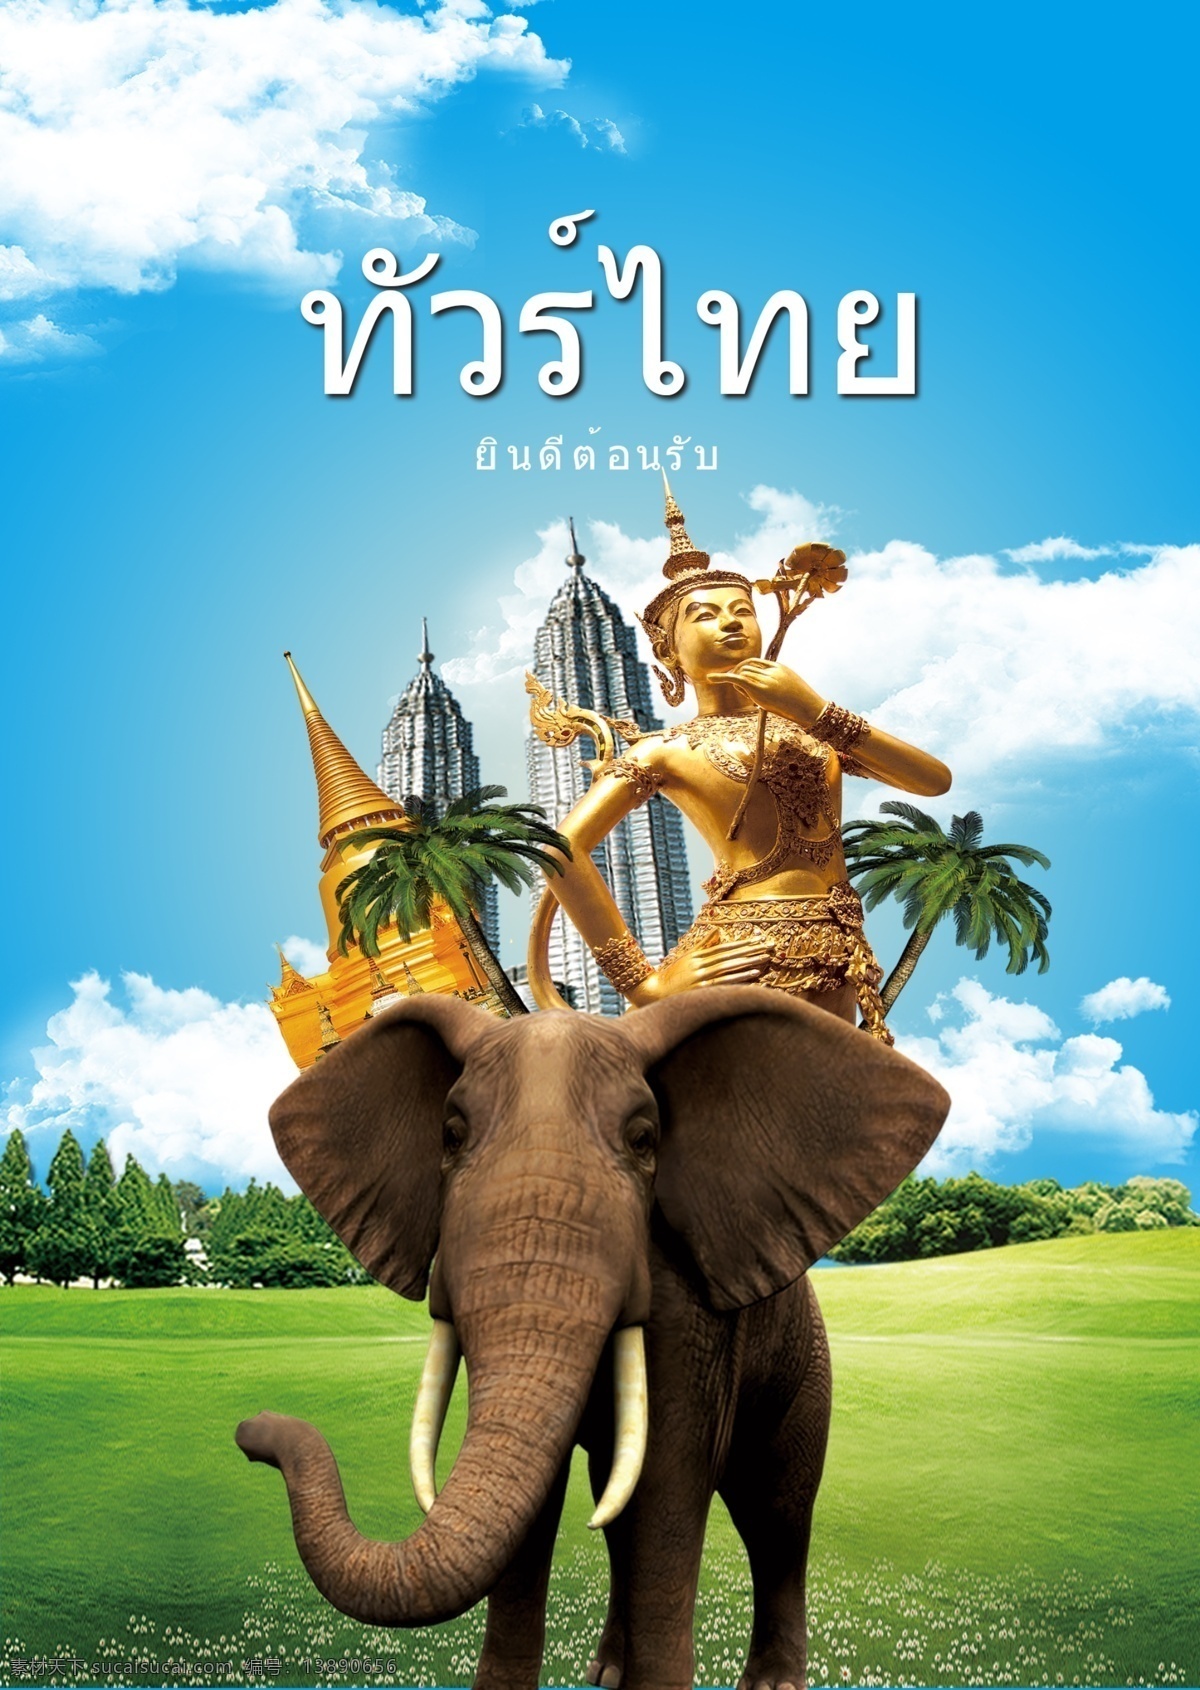 在泰国的大象 象 动物 佛像 寺庙 大皇宫 房屋 椰子树